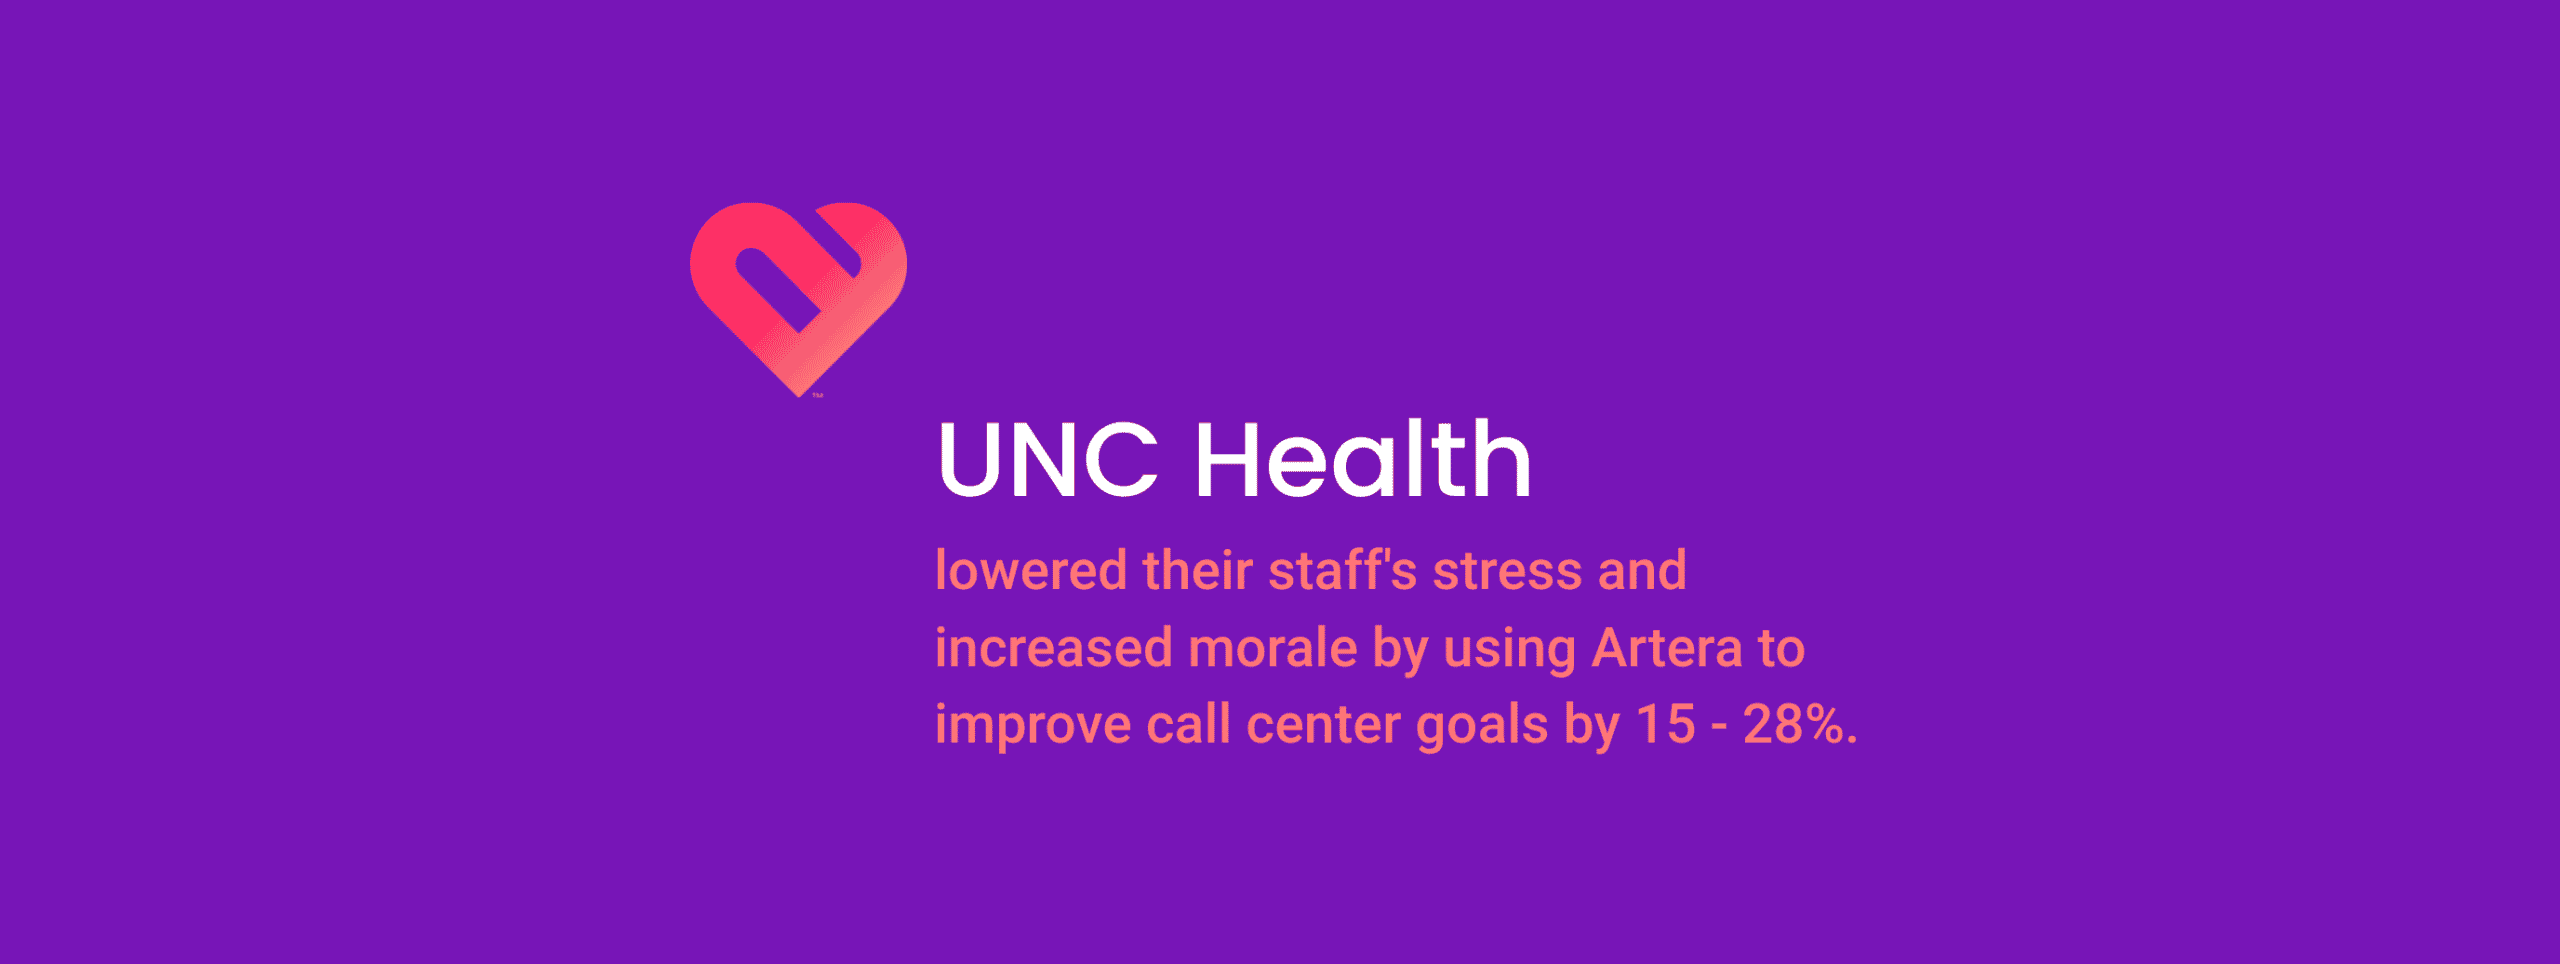 UNCH Health call center goals header